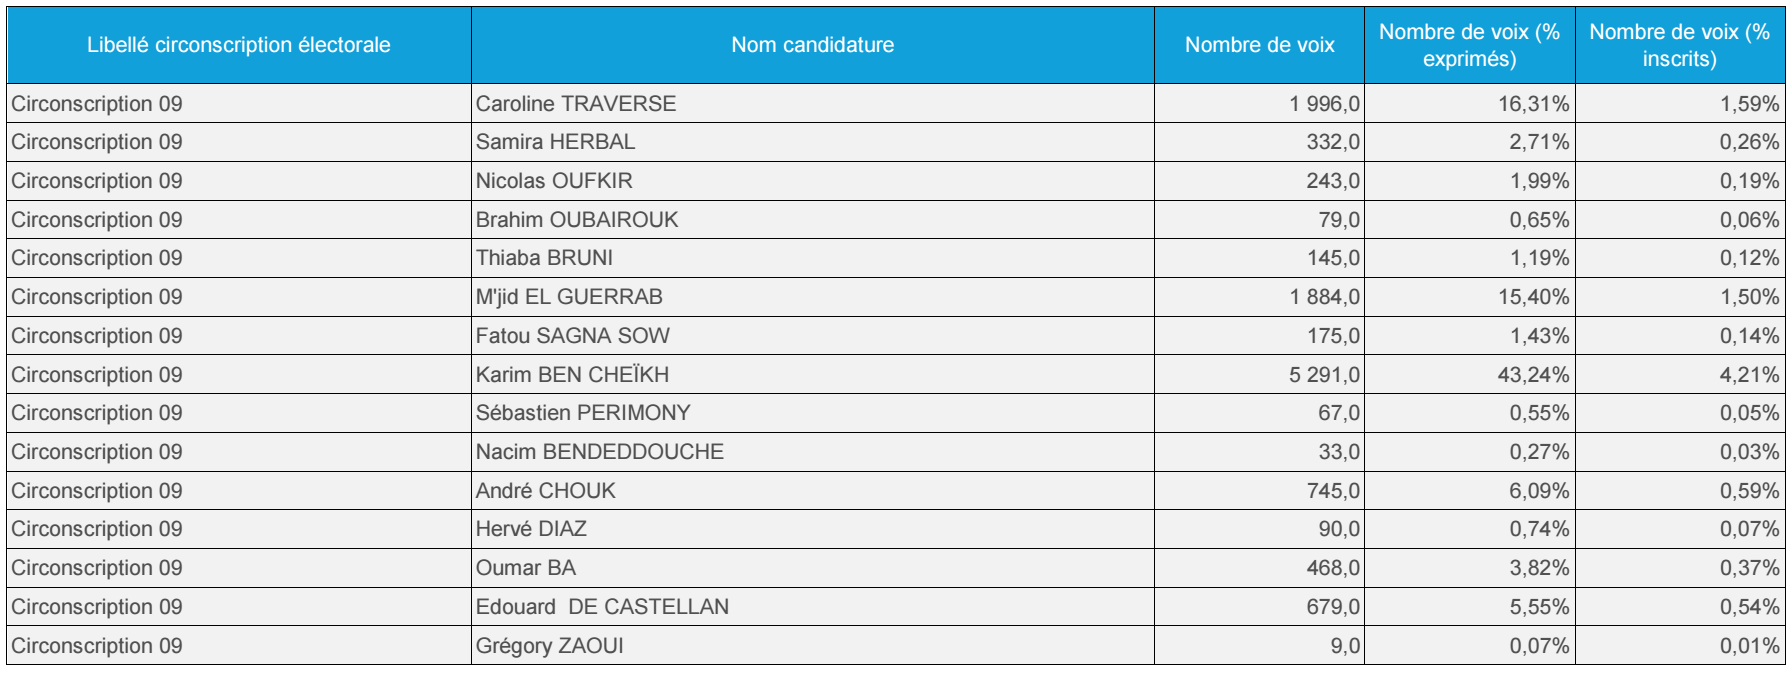 9ème circonscription : Karim Bencheikh rafle 43% des voix et s'impose au premier tour des partielles 